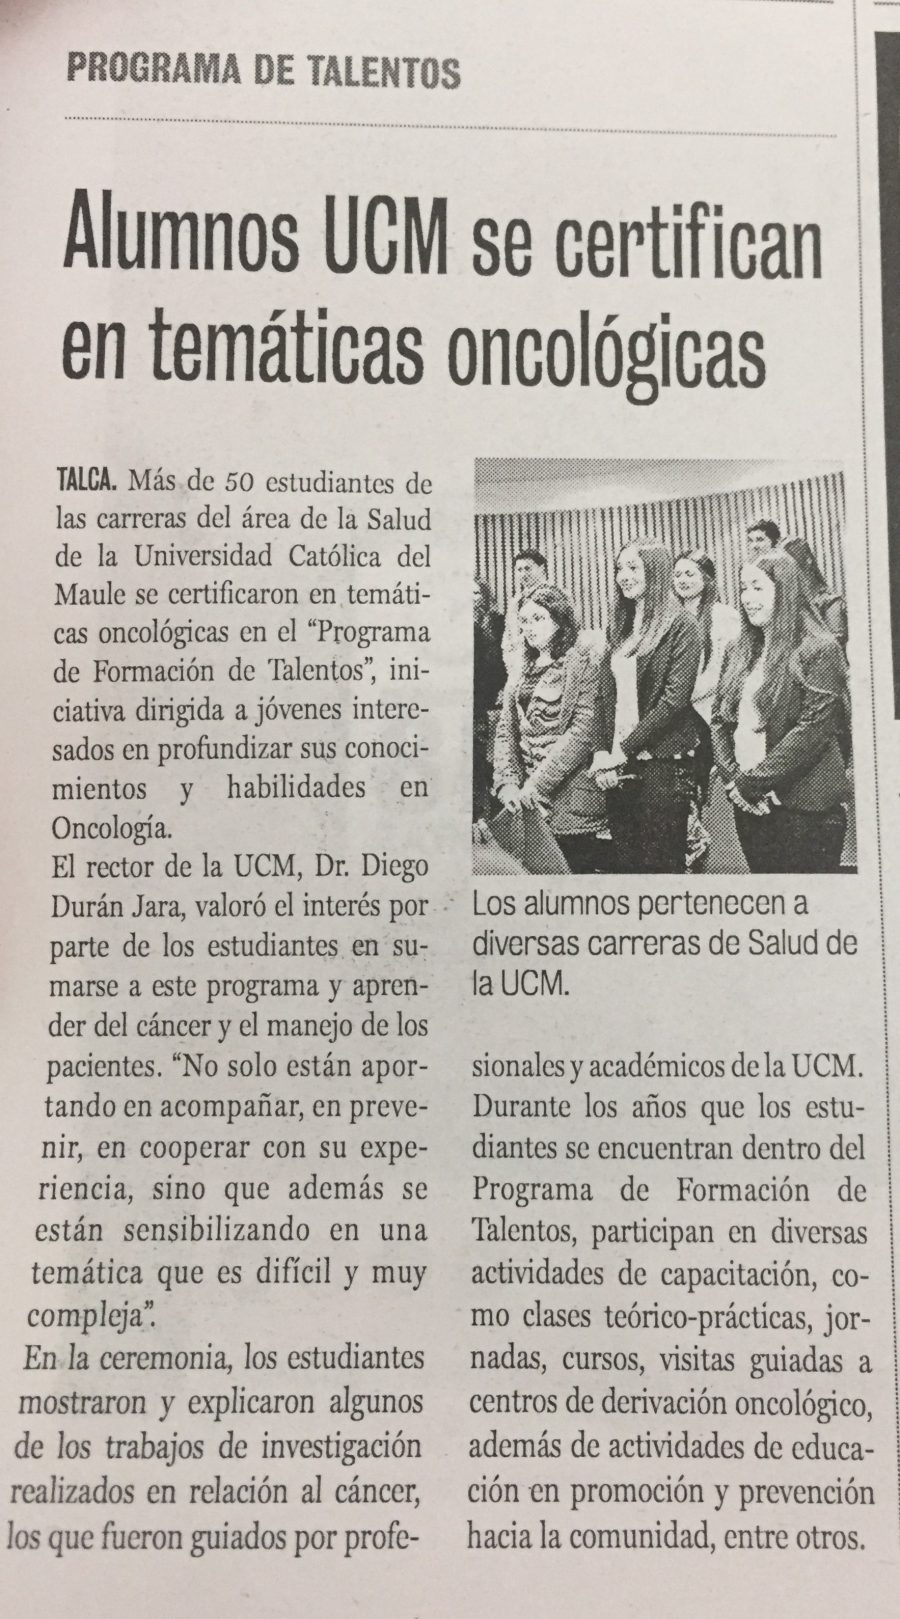 25 de septiembre en Diario La Prensa: “Alumnos UCM se certifican en temáticas oncológicas”